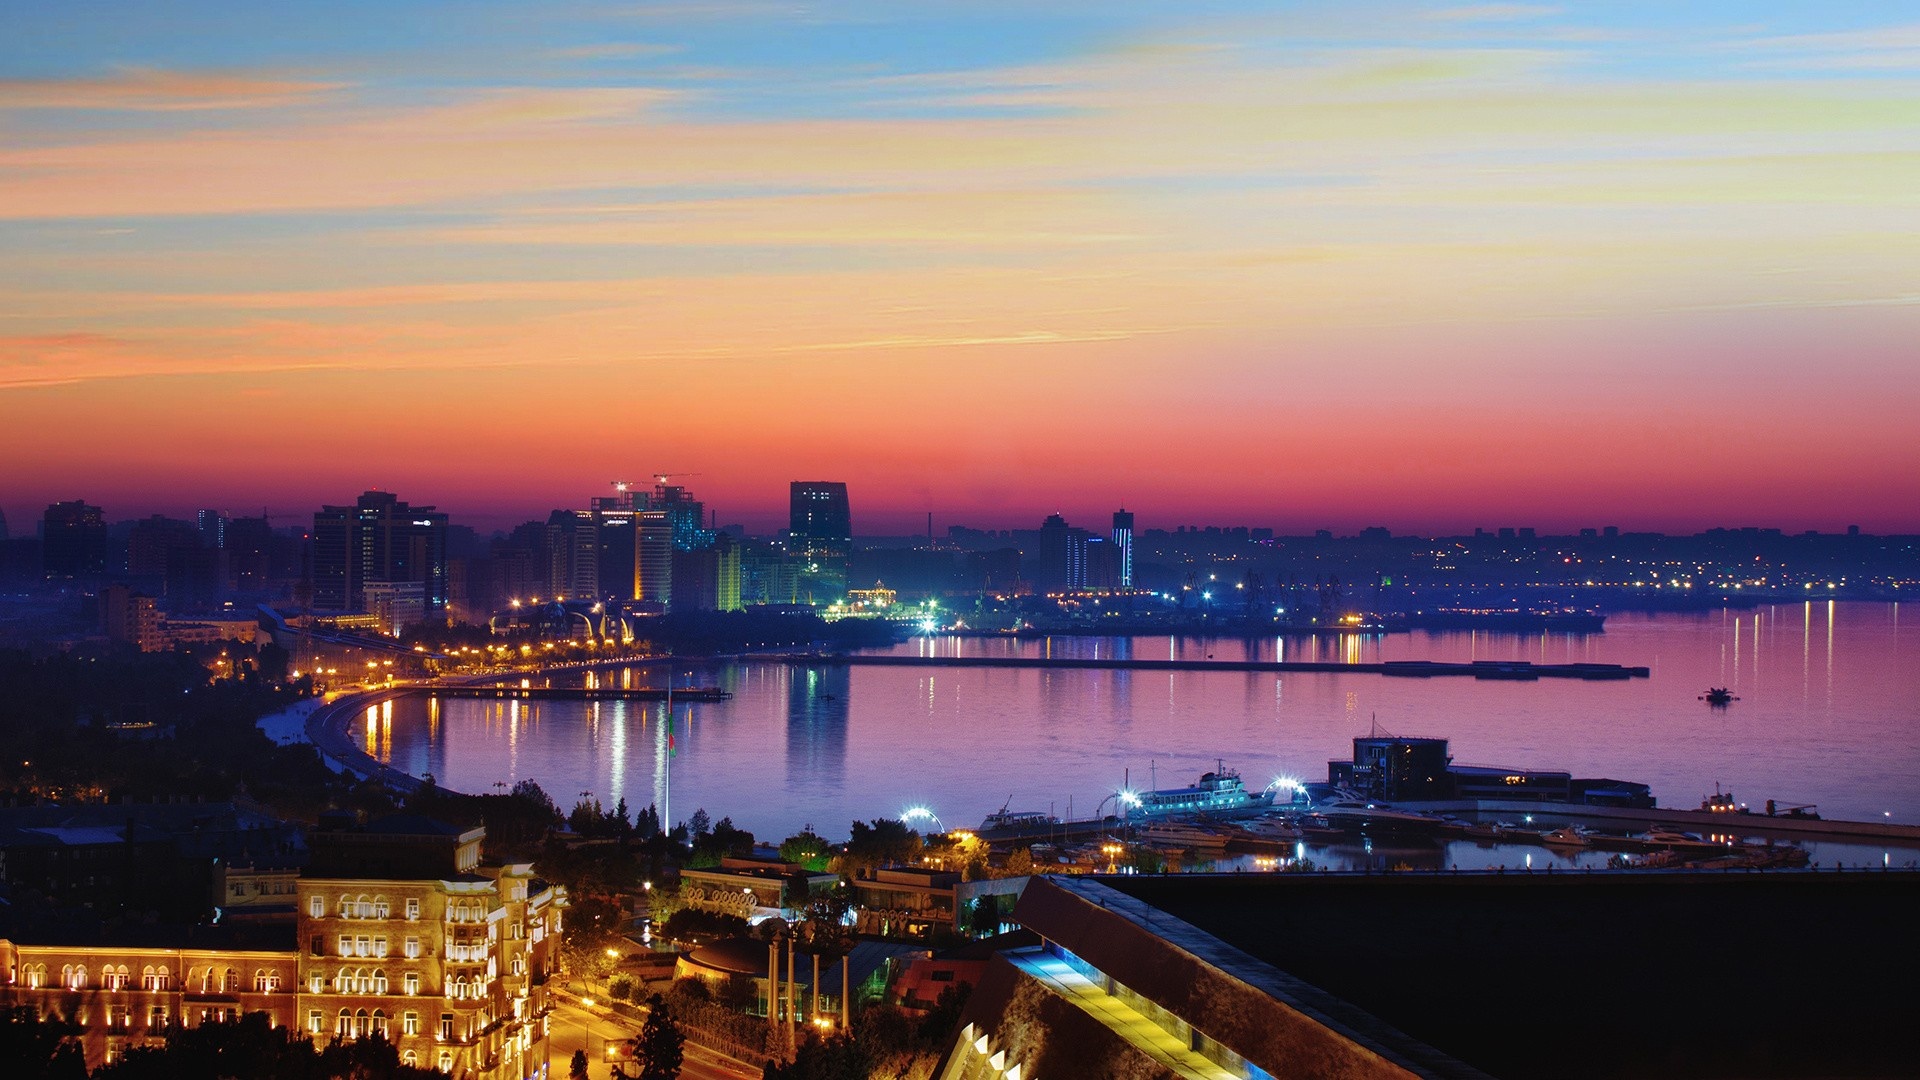 Azerbaijan: Cityscape, Sunrise, Azerbaijan's capital. 1920x1080 Full HD Wallpaper.